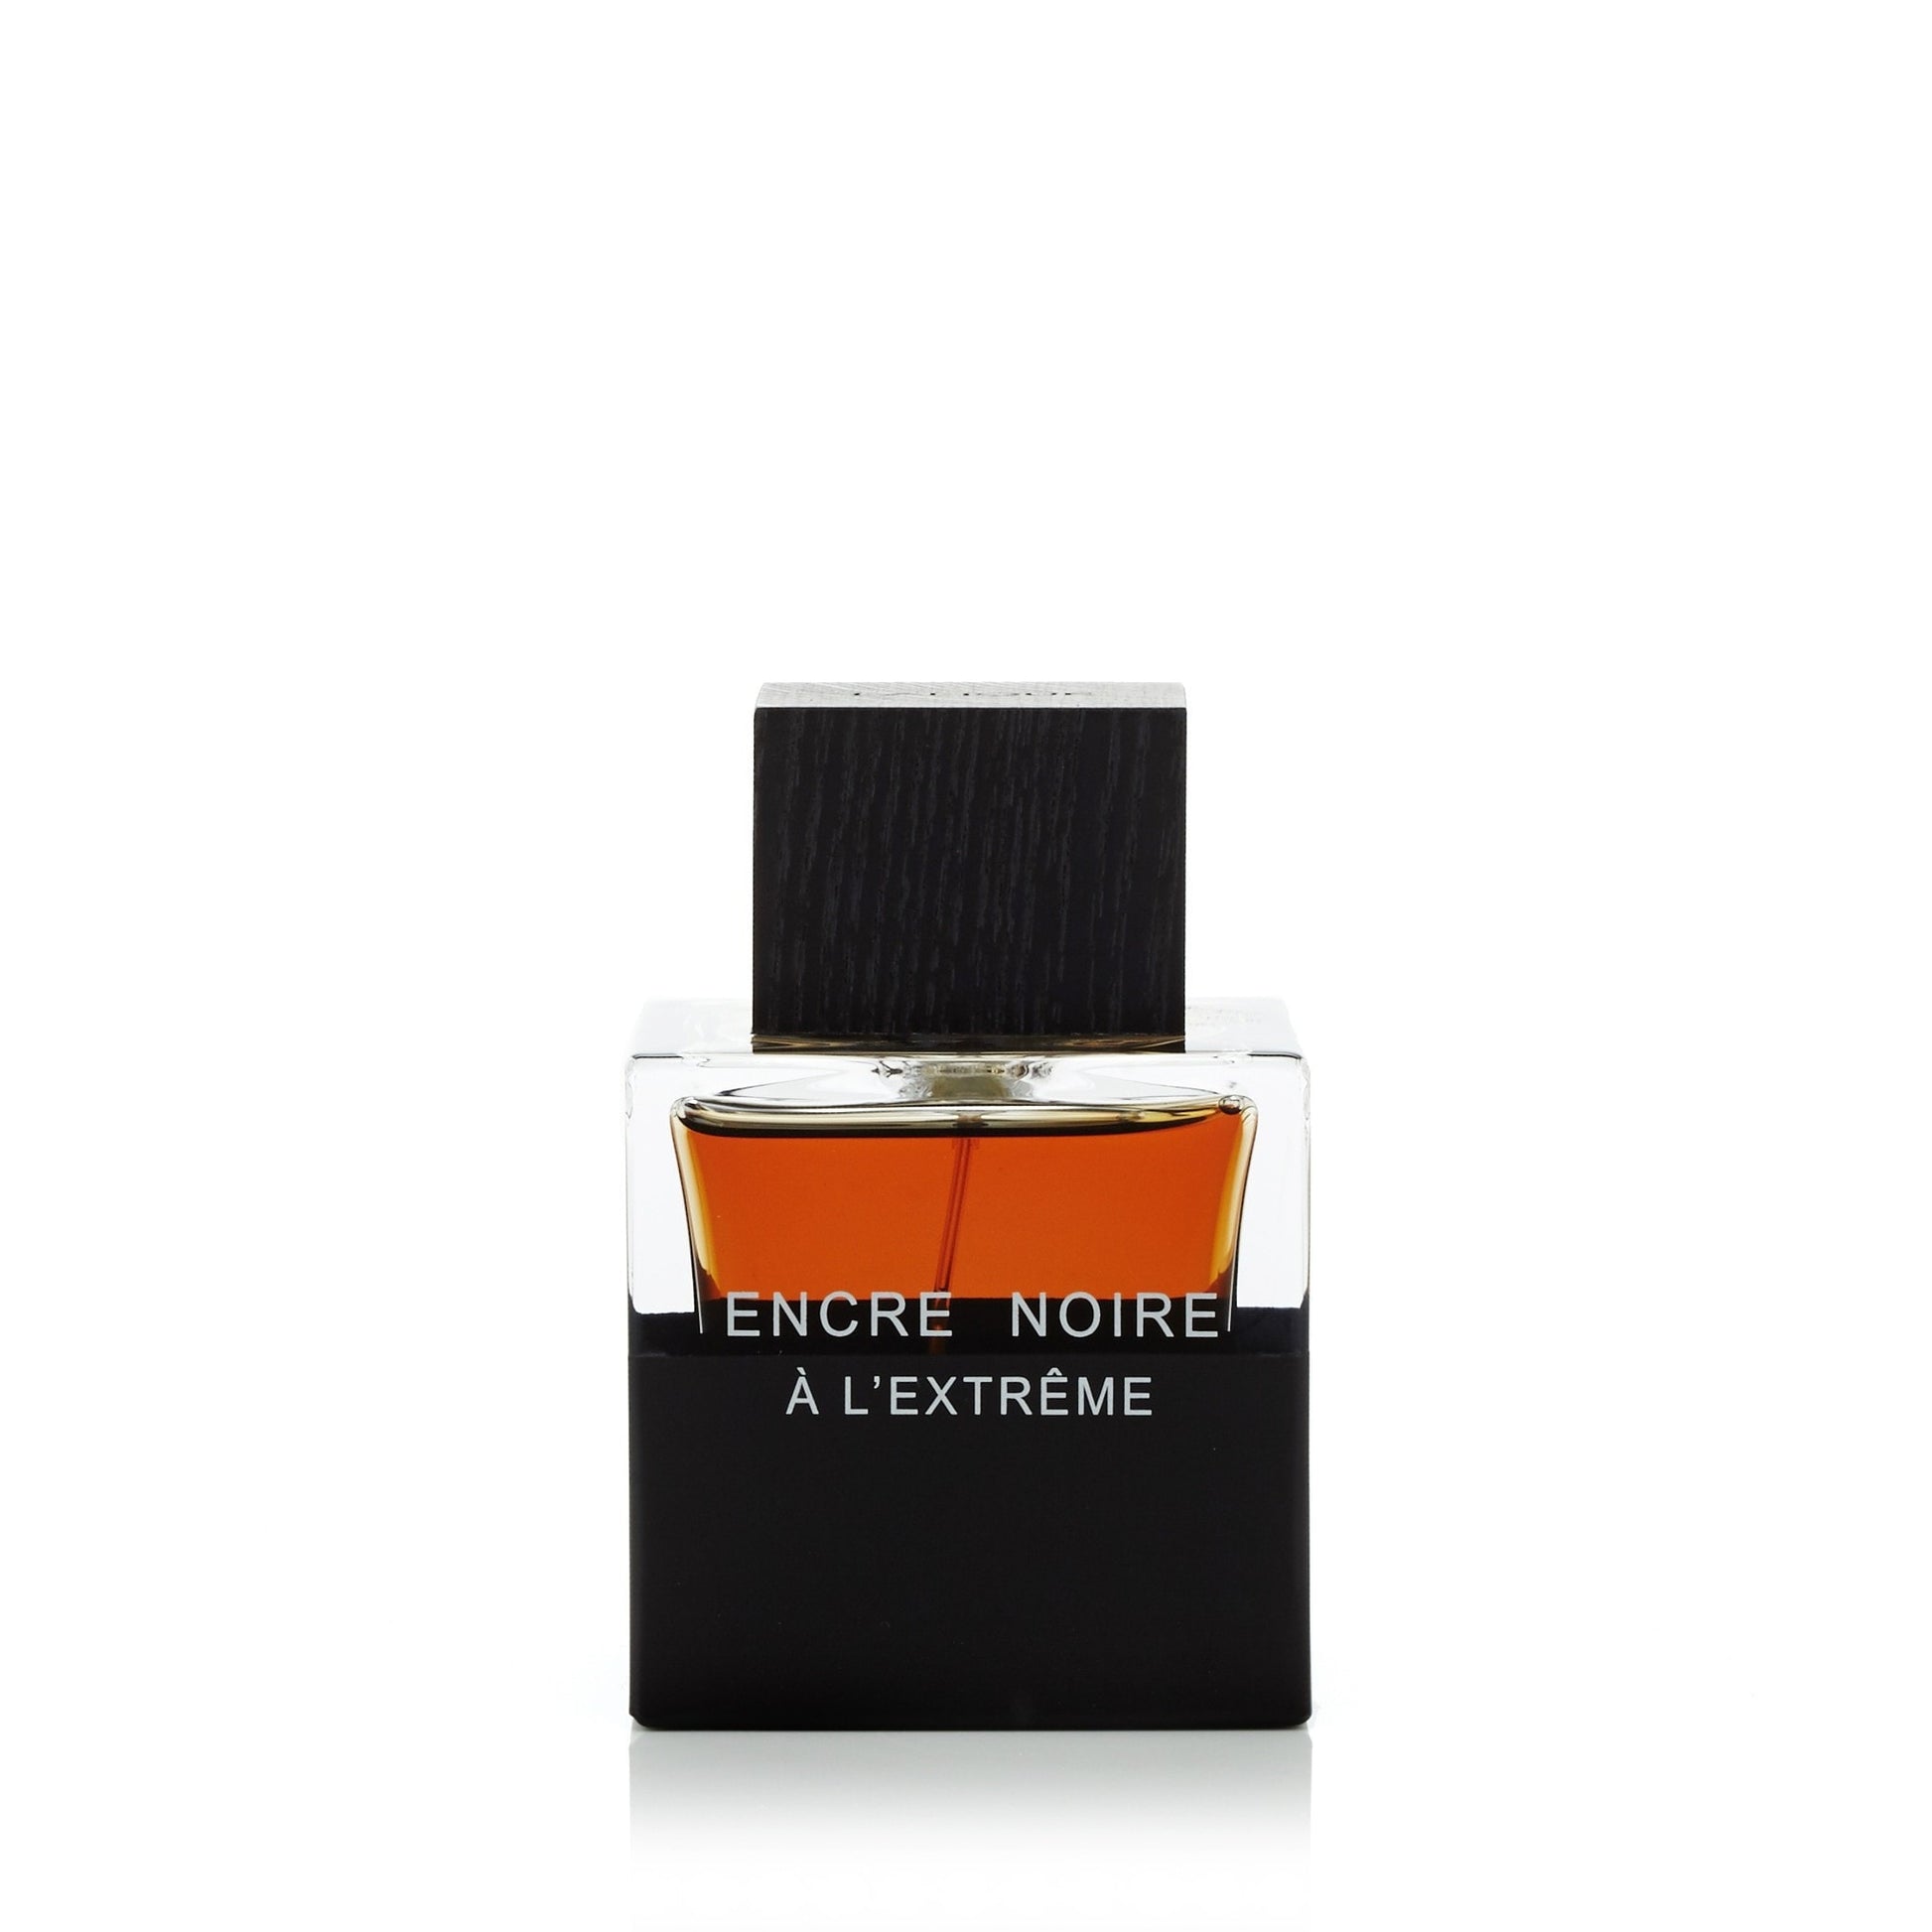 Encre Noire A L'Extreme Eau de Parfum Spray for Men by Lalique 3.4 oz. Click to open in modal